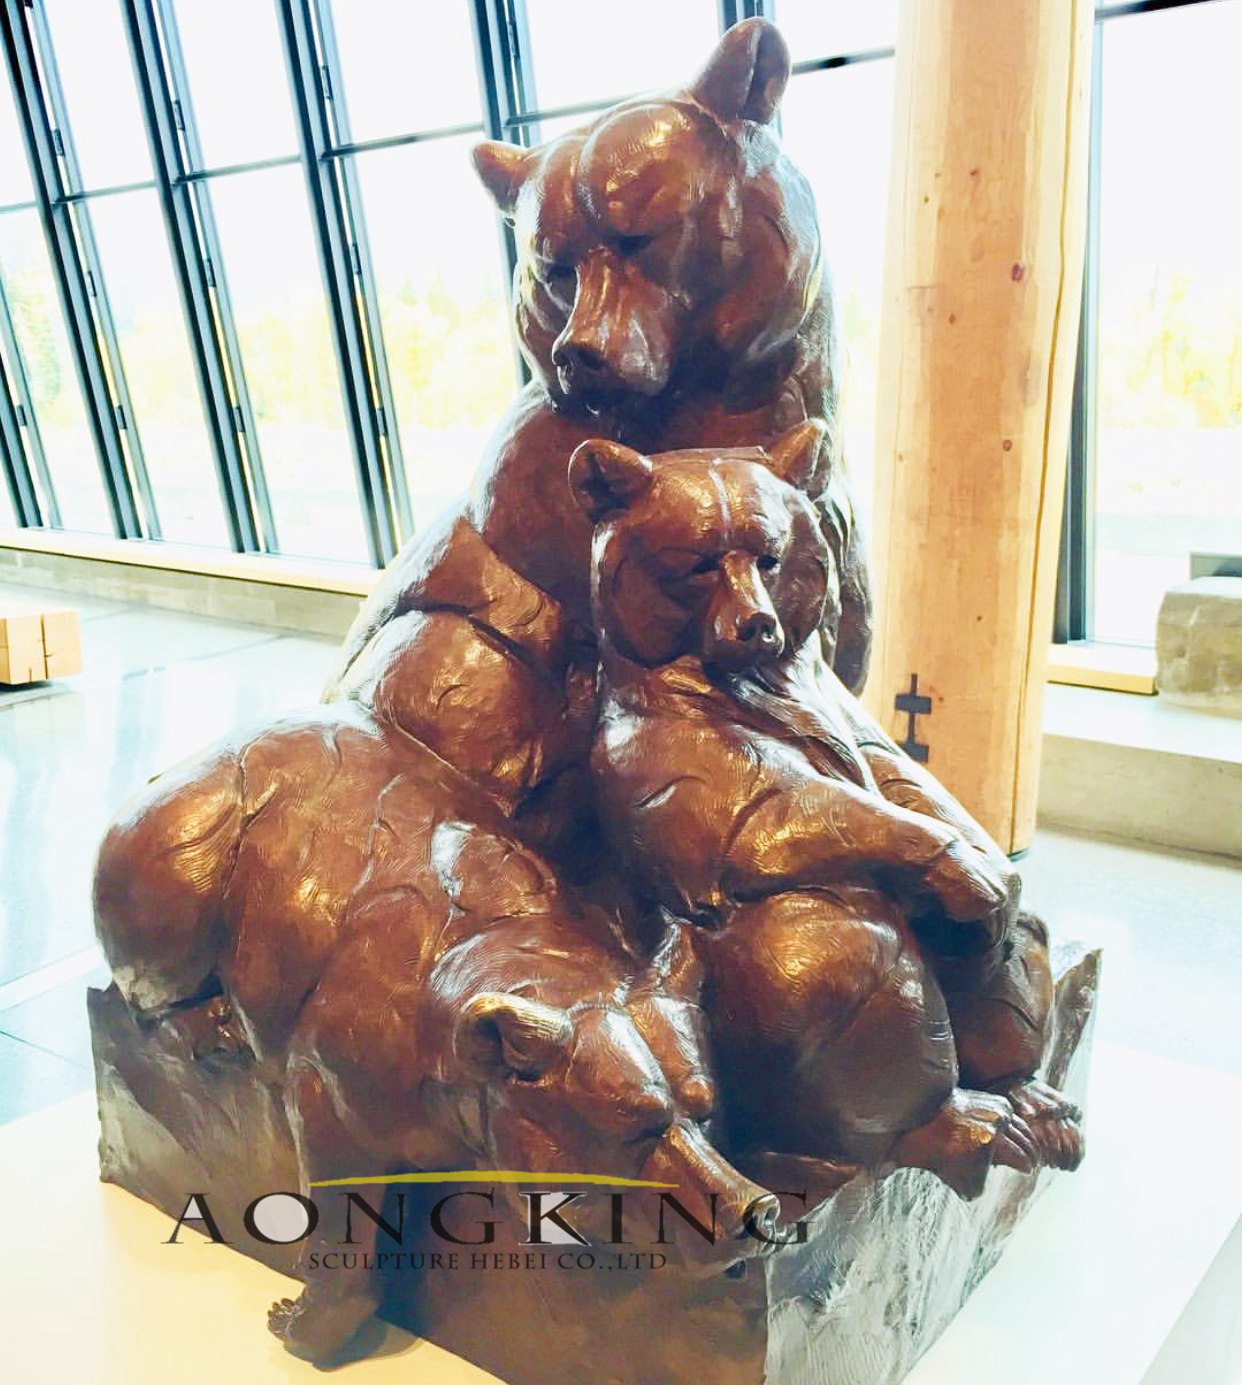 Sculptures of bear